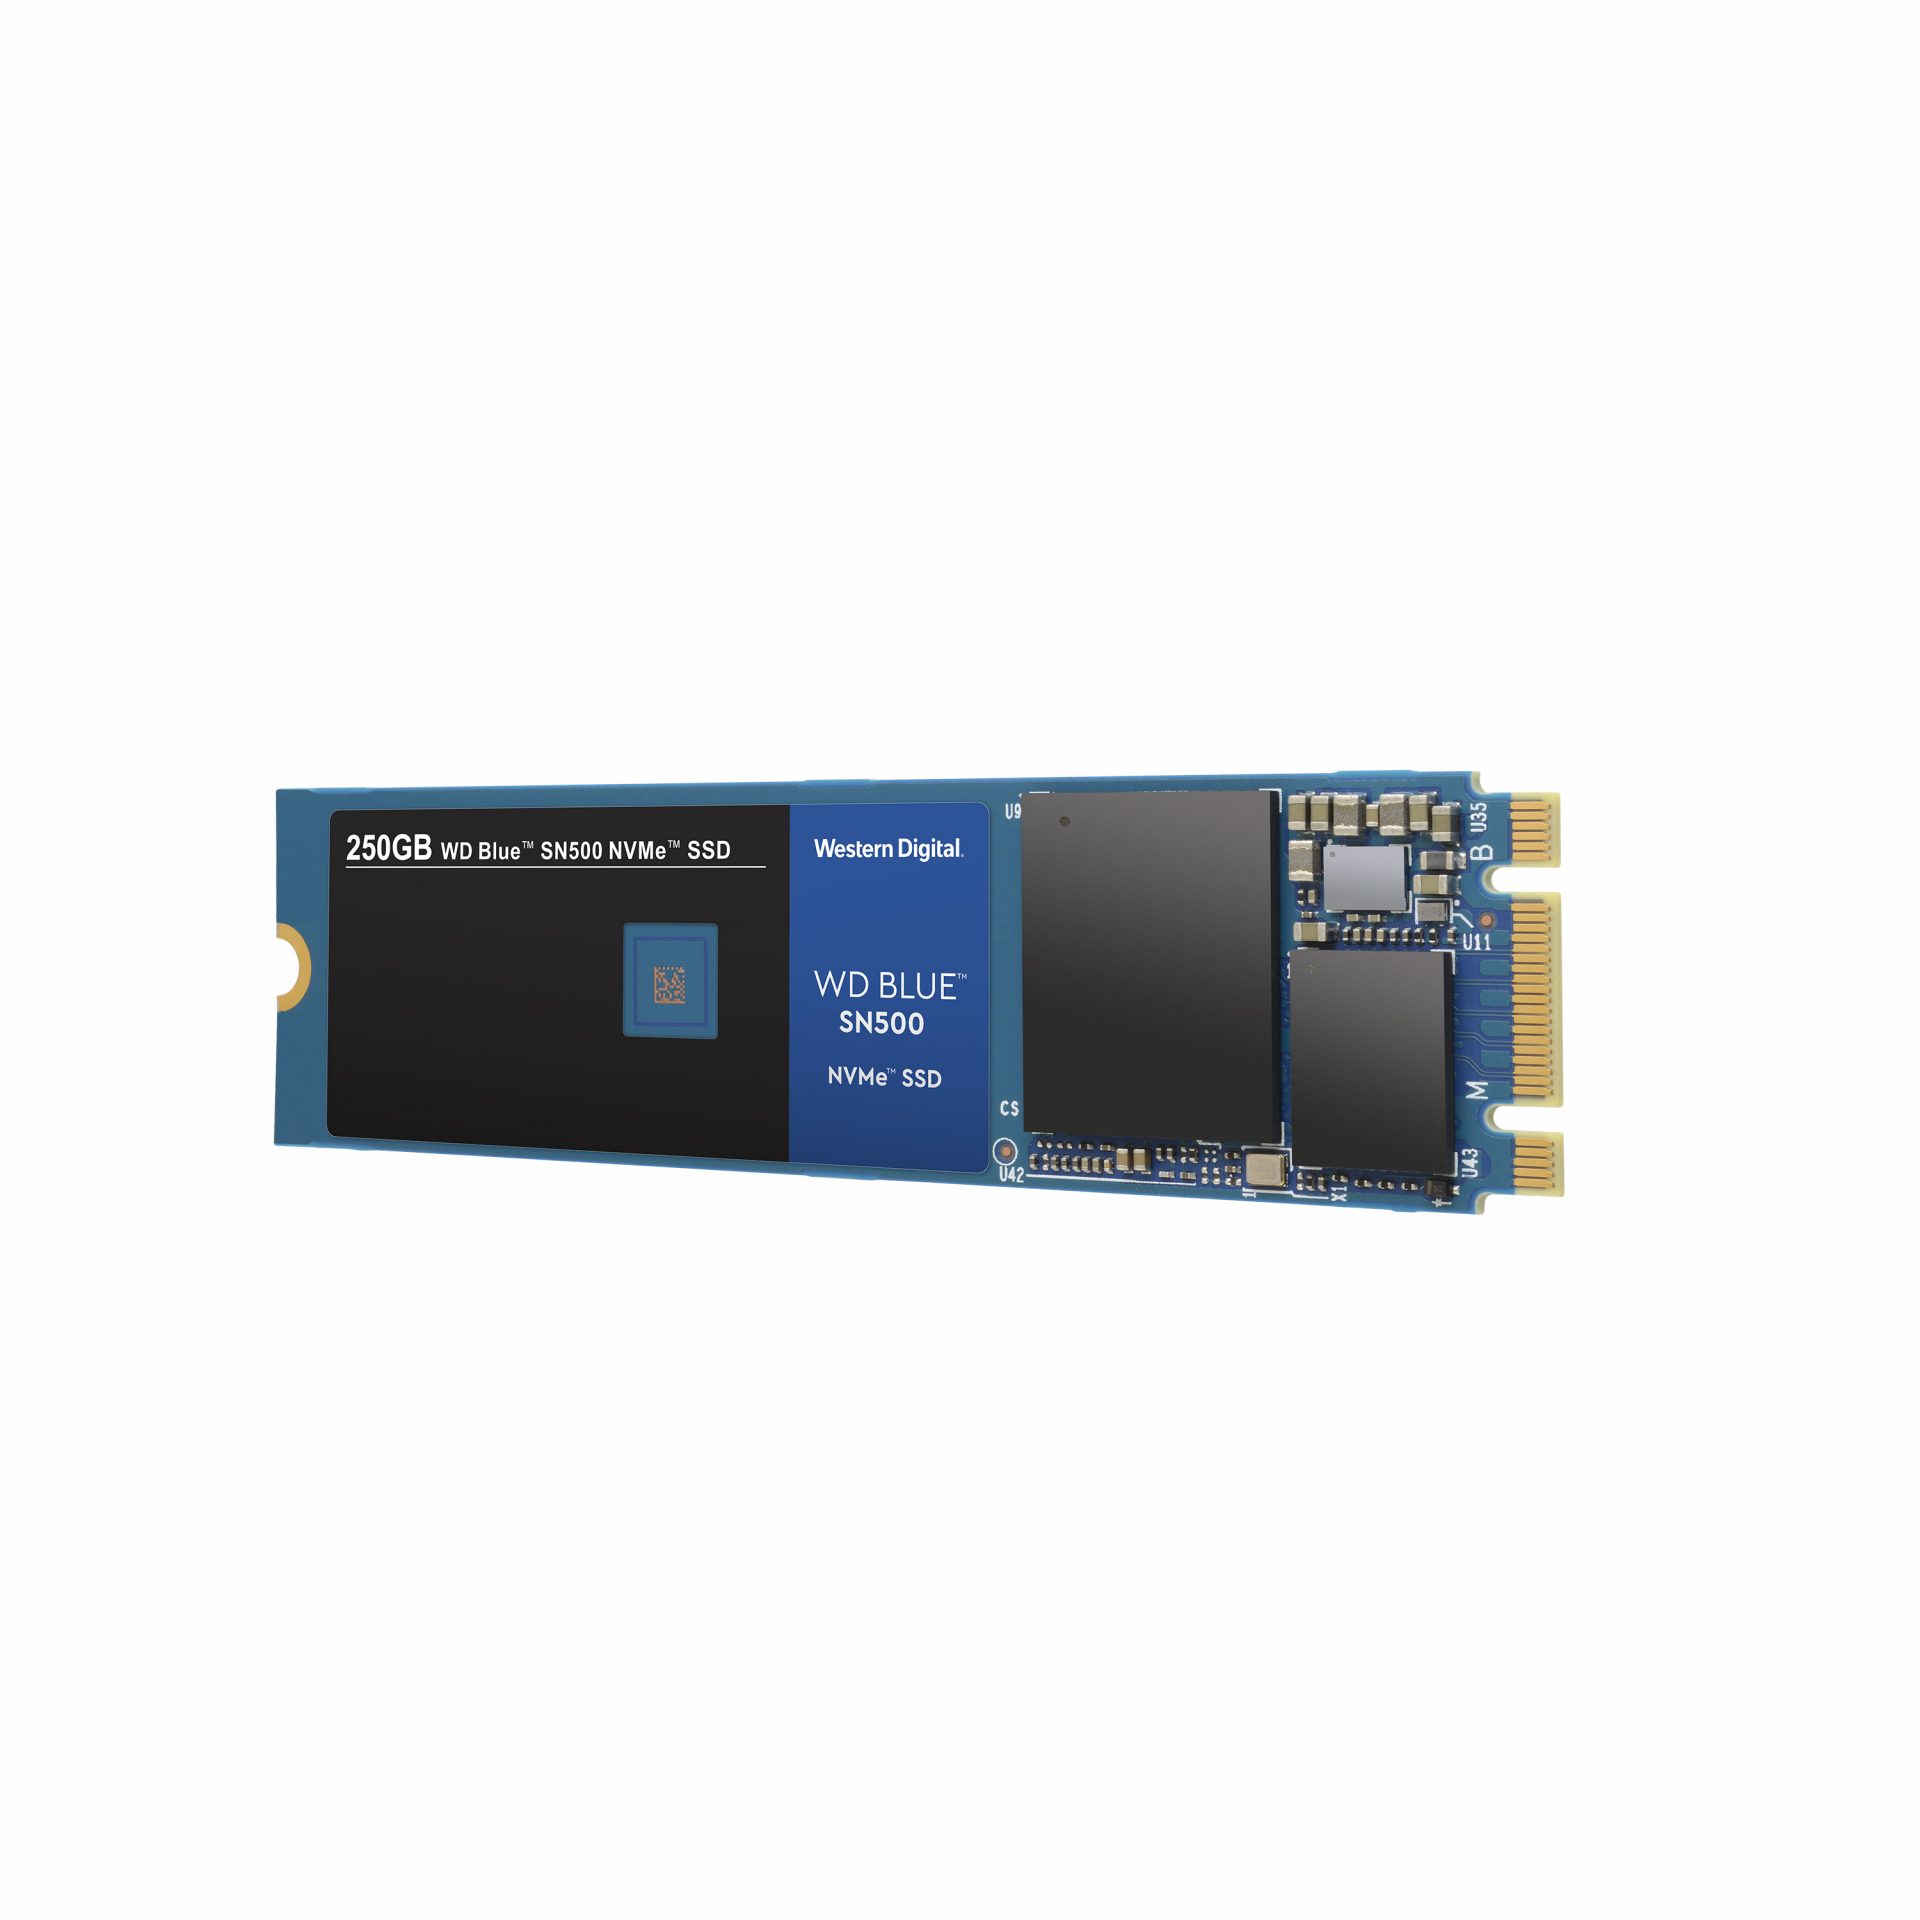 “WD Blue SSD” รุ่นใหม่ รองรับการใช้งานบน NVMe เร็วกว่า SATA ถึง 3 เท่า